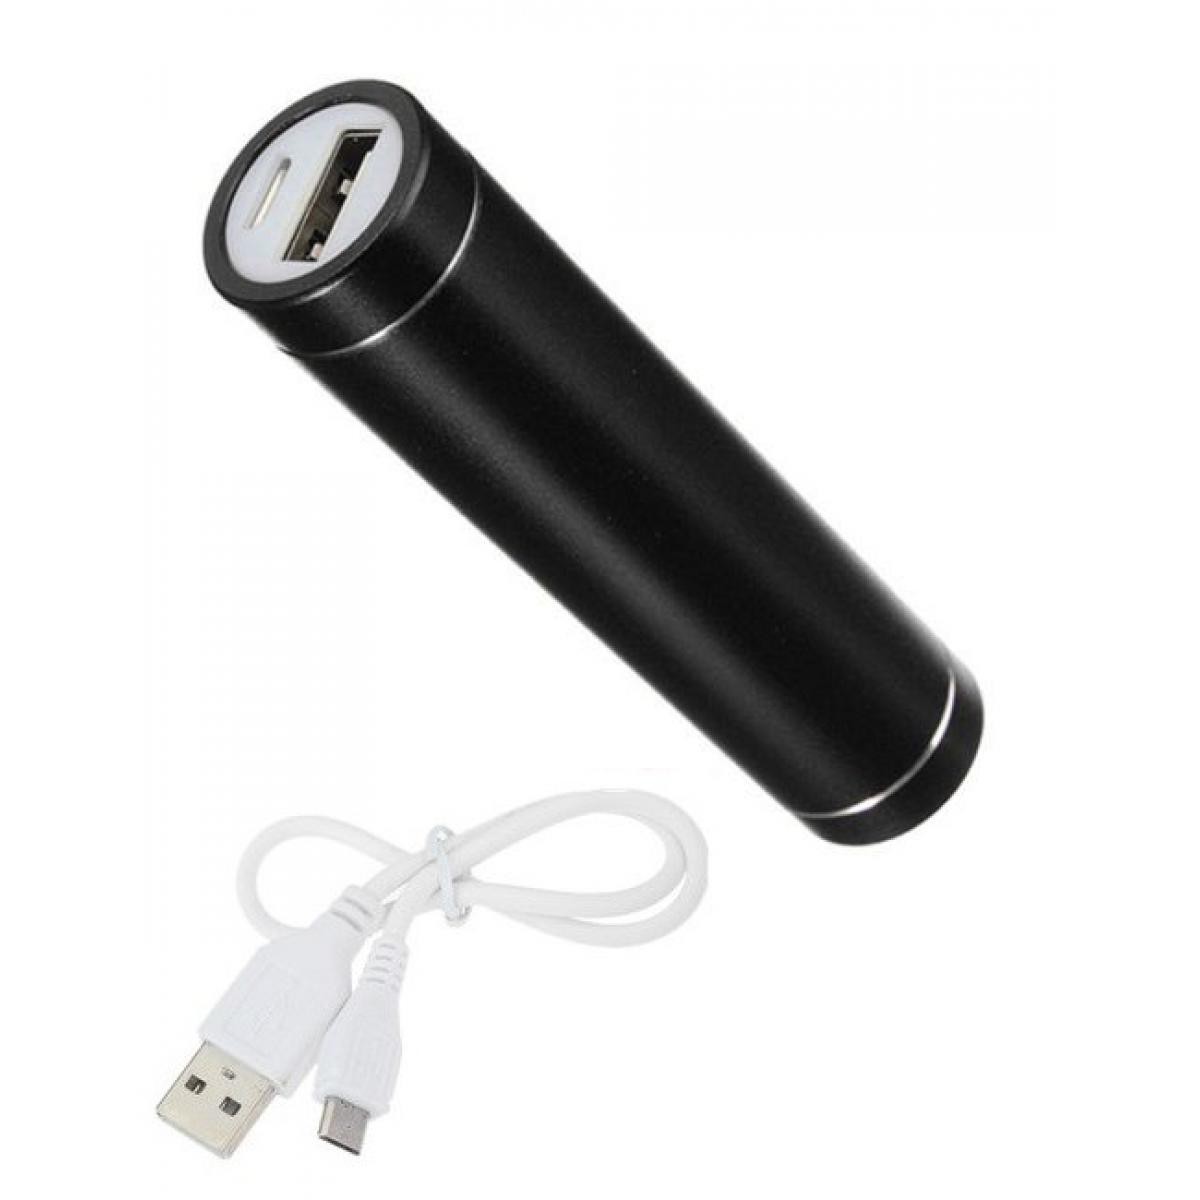 Shot - Batterie Chargeur Externe pour CROSSCALL TREKKER-X4 Power Bank 2600mAh avec Cable USB/Mirco USB Secours Telephone (NOIR) - Chargeur secteur téléphone